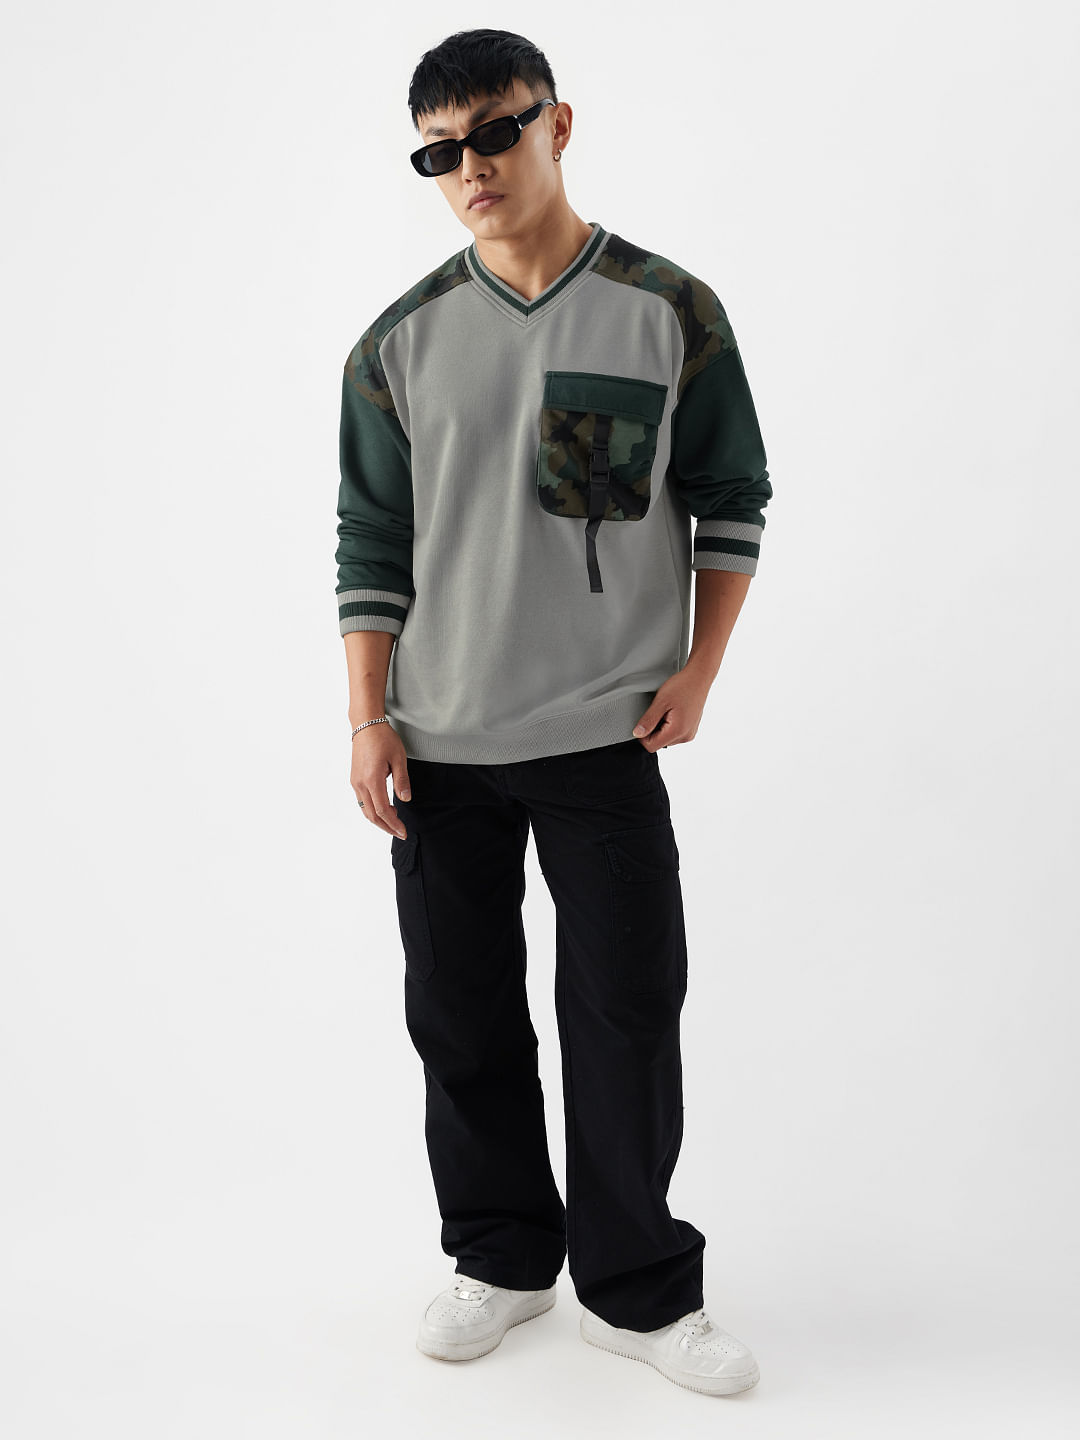 Buy TSS Originals: Camo Shock Mens Oversized Sweatshirts Online